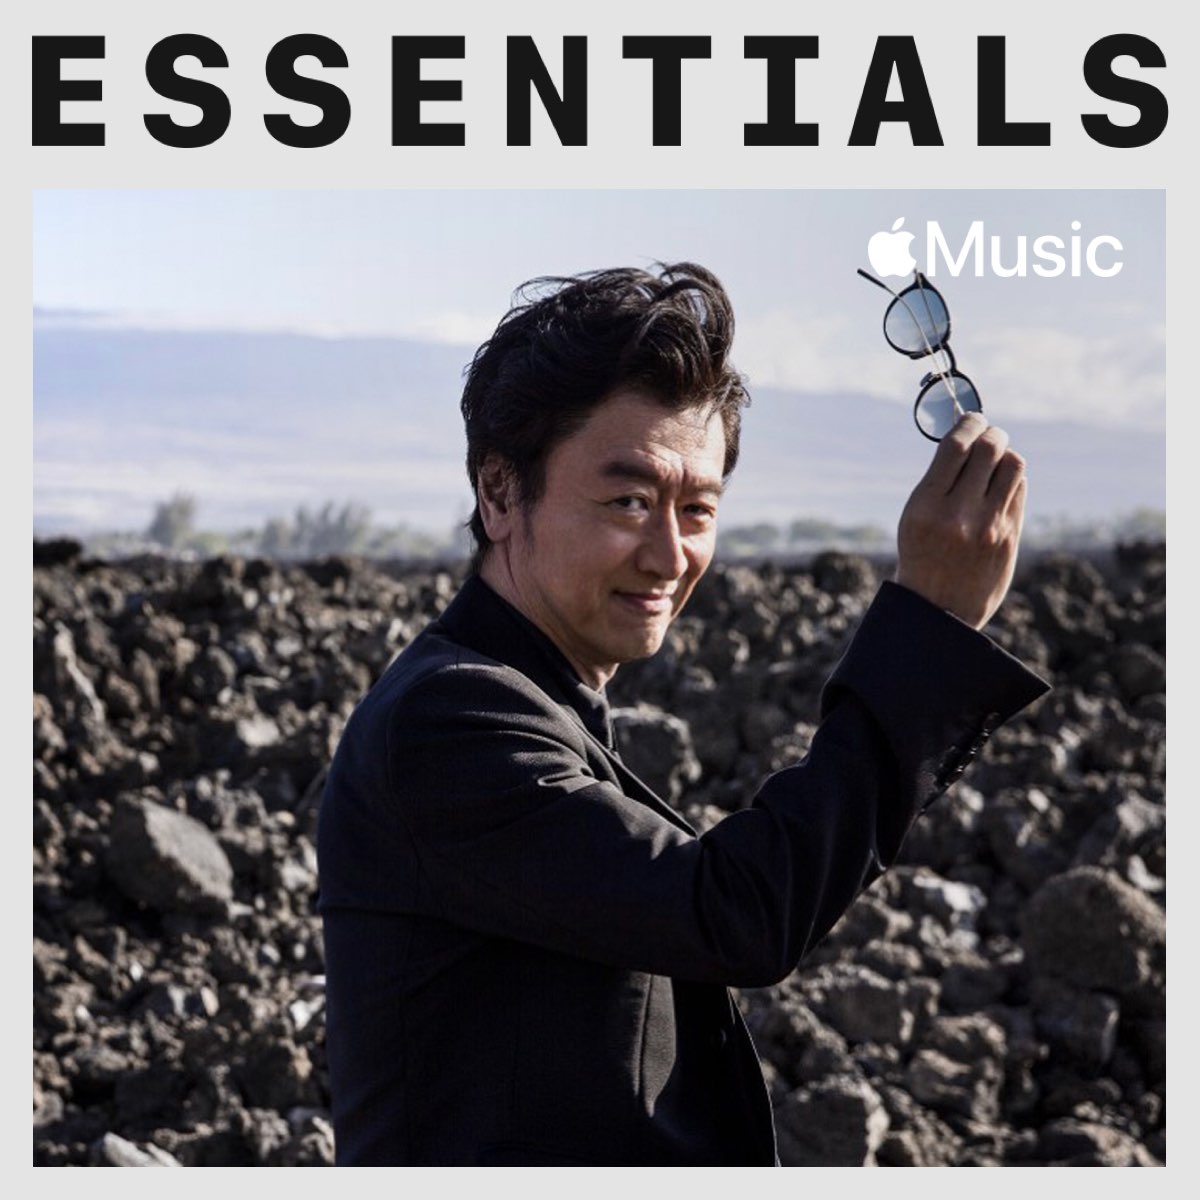 Keisuke Kuwata Essentials On Apple Music